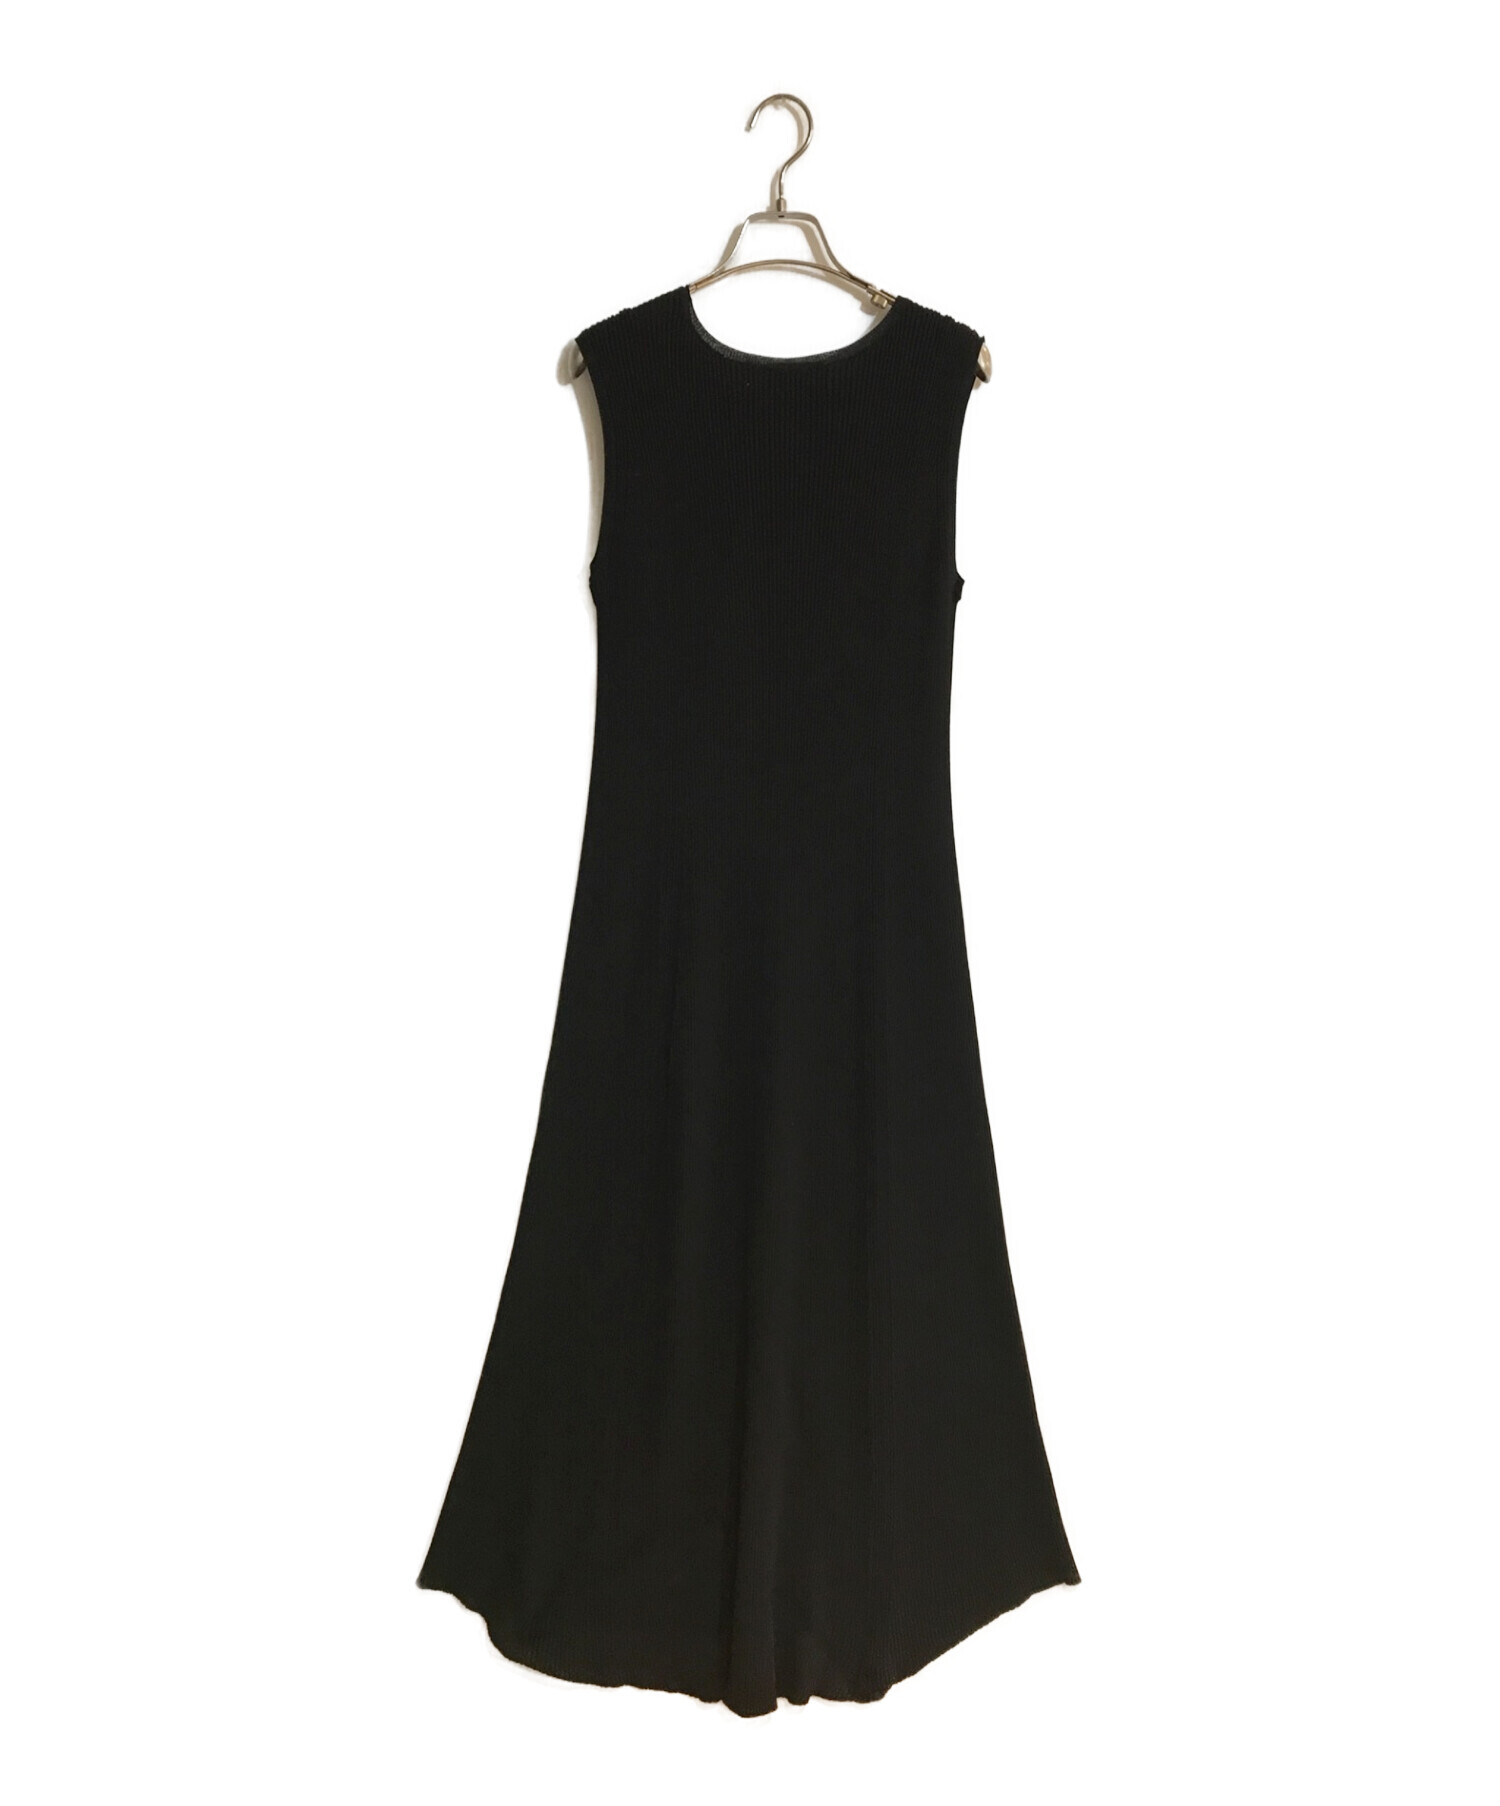 LE CIEL BLEU (ルシェルブルー) Rib Shaped Knit Dress/リブ シェイプト ニット ドレス ブラック サイズ:36